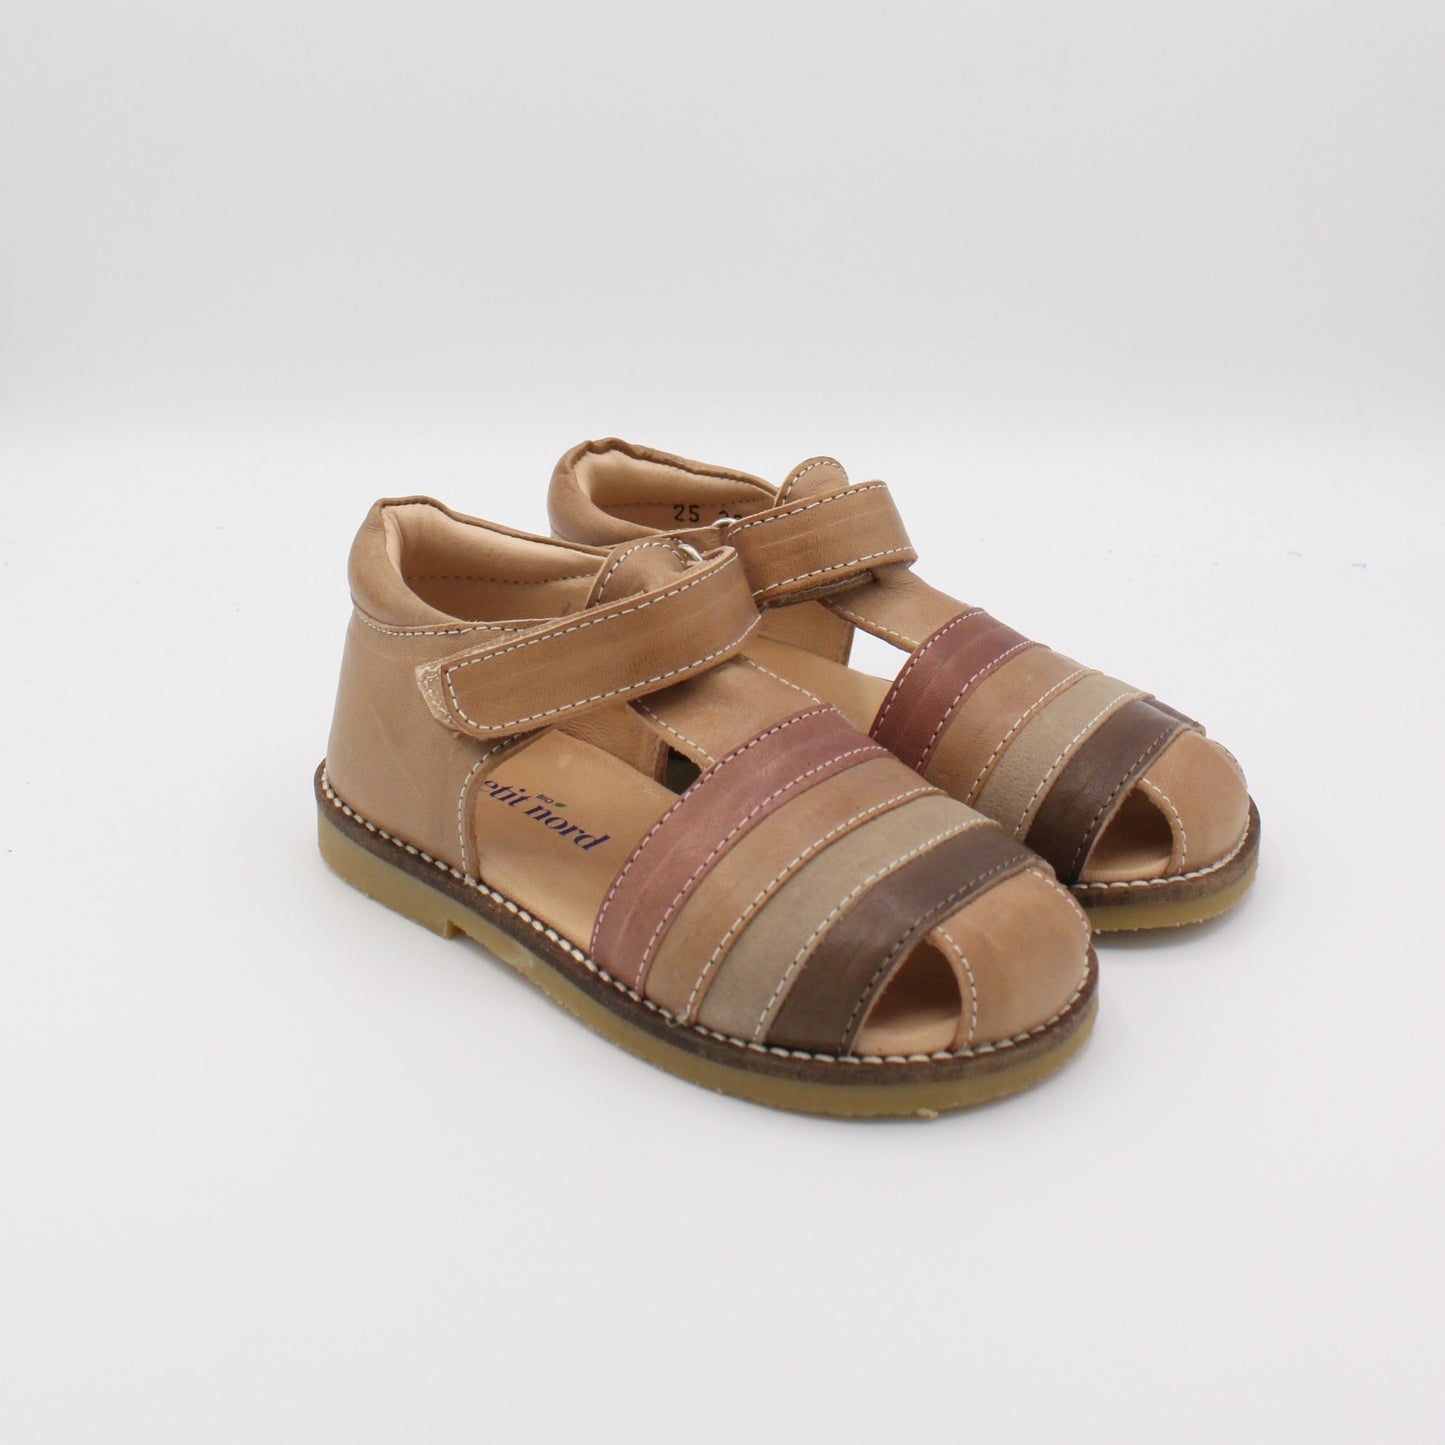 Pre-loved Sandals (EU25)